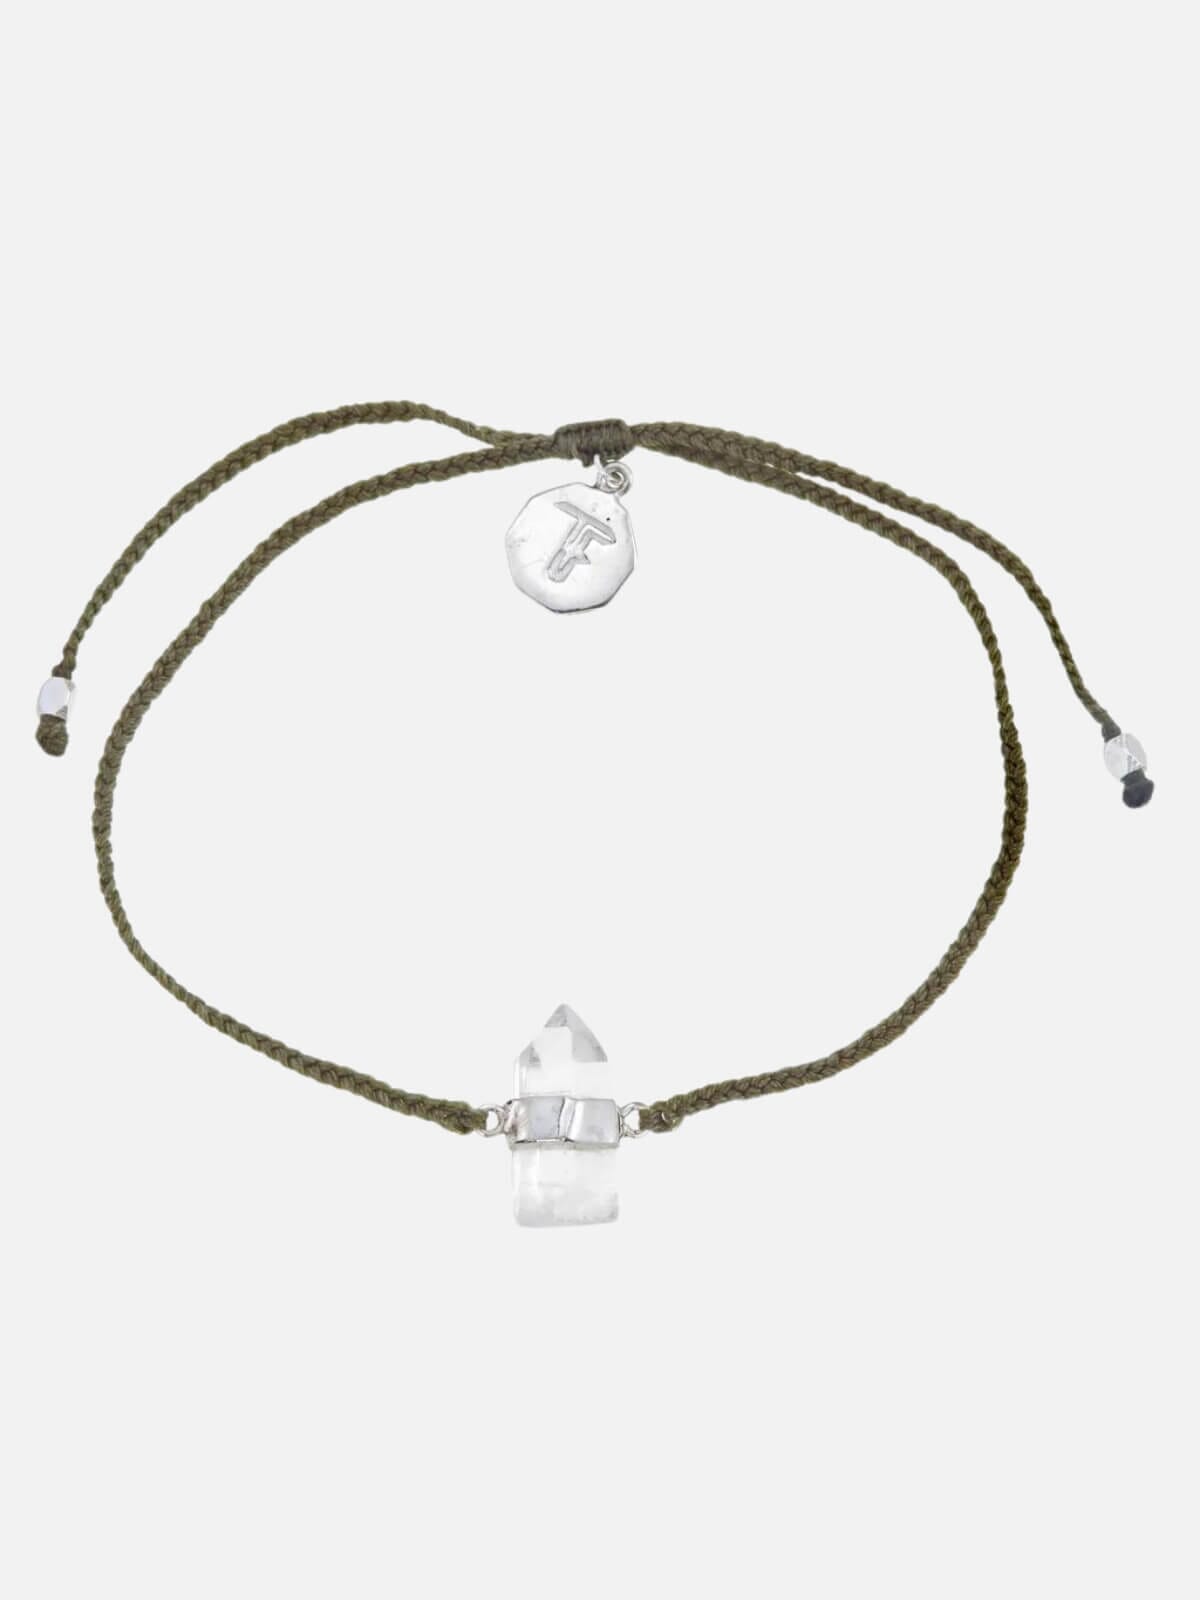 Tiger Frame | Quartz Crystal Bracelet - Olive Green/Silver | Perlu